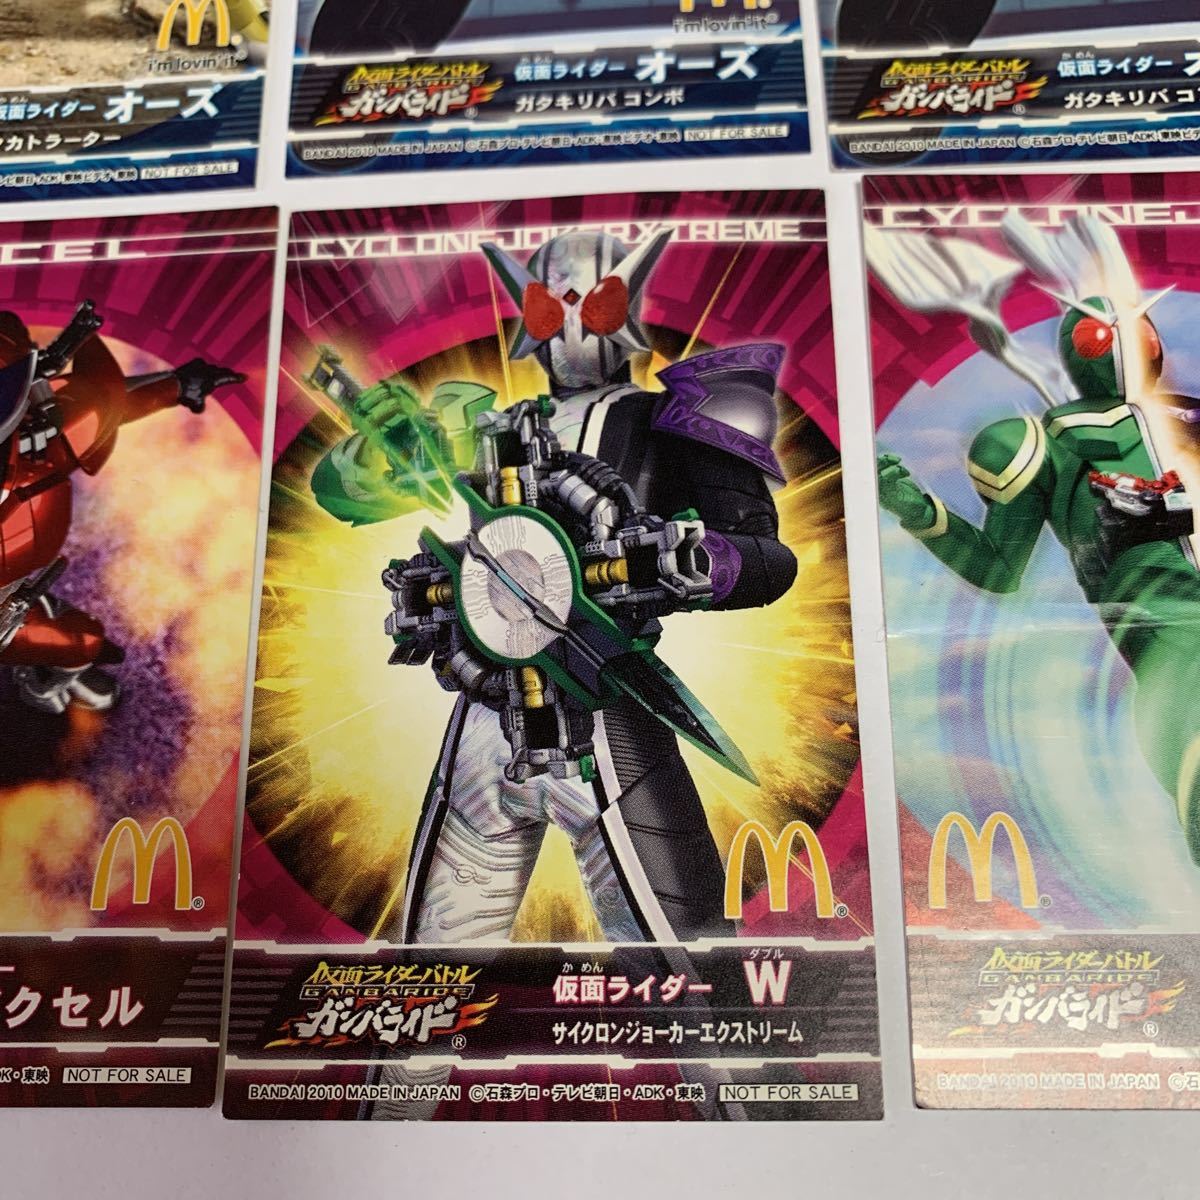  Kamen Rider Kamen Rider Battle Ganbaride наклейка 10 листов 2010 McDonald's happy комплект BANDAI редкость редкий не продается не использовался бесплатная доставка 